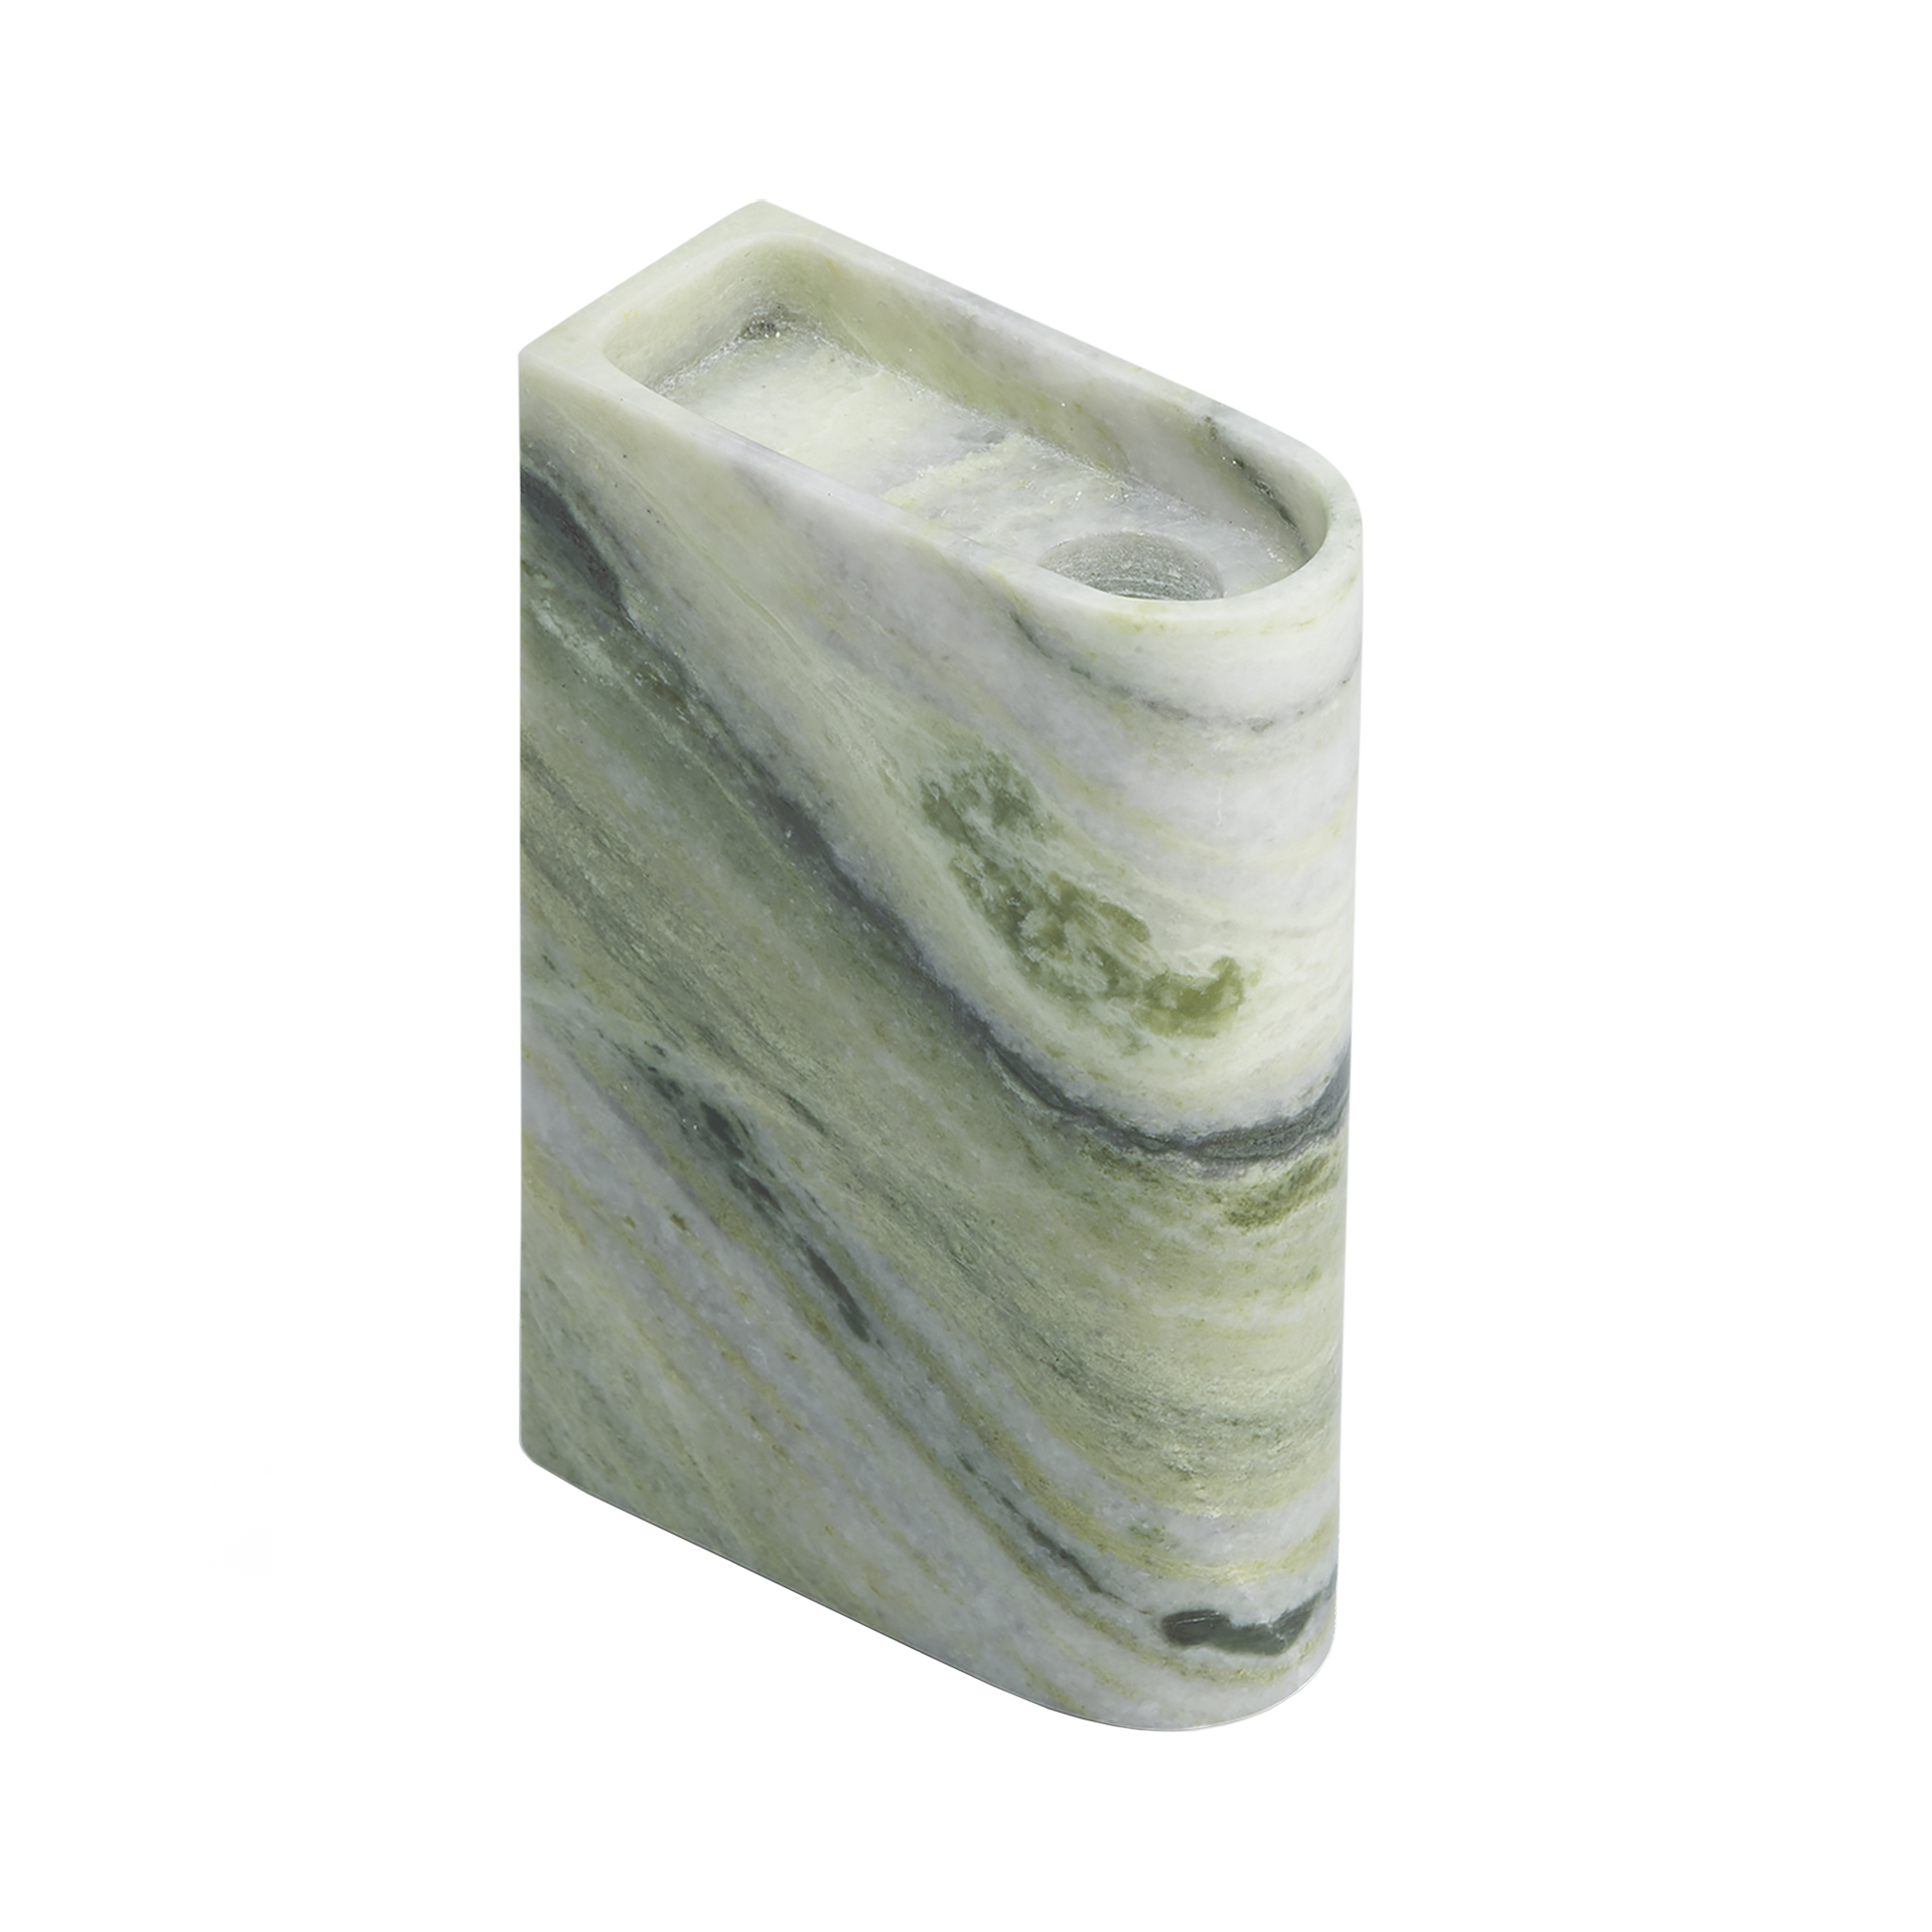 Northern - Monolith Kerzenhalter mittel - gemischtes grn/Verde Prato Marmor/BxHxT 4x13x9cm/jedes Stck ein Unikat